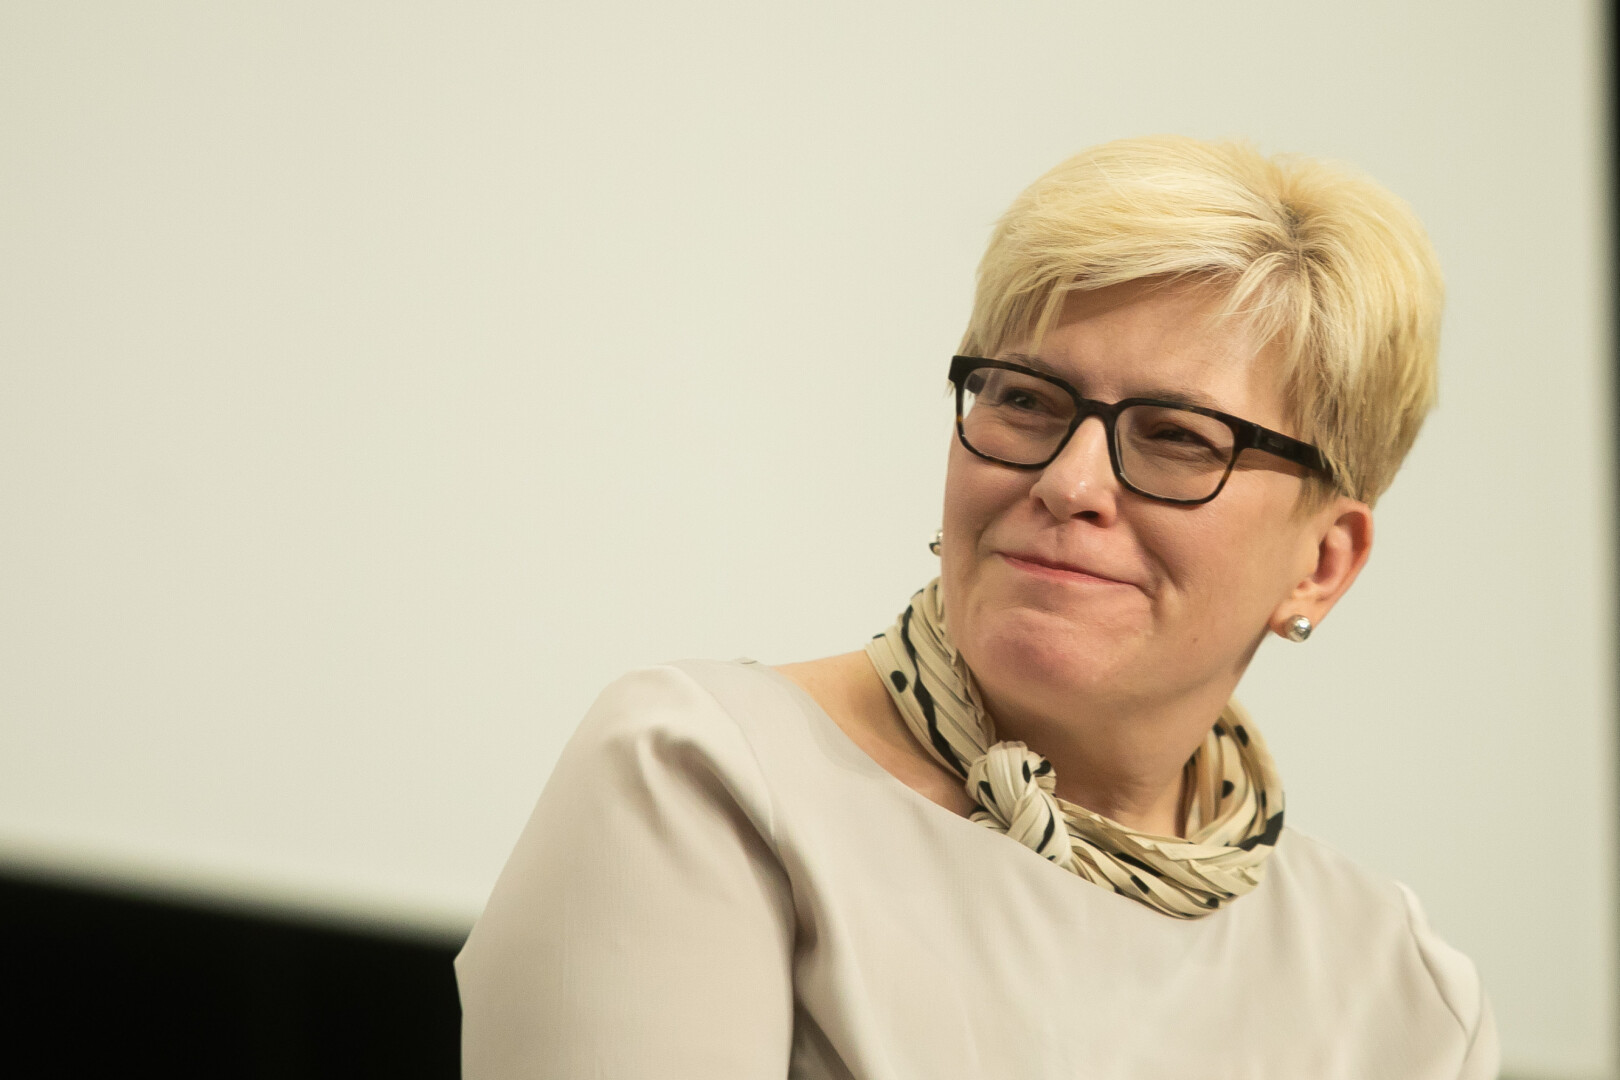 Penktadienio popietę paaiškėjus, jog krašto apsaugos ministras Arvydas Anušauskas atsistatydina, premjerė Ingrida Šimonytė privalėjo nedelsiant paaiškinti susiklosčiusią situaciją, sako opozicinių partijų vadovai.